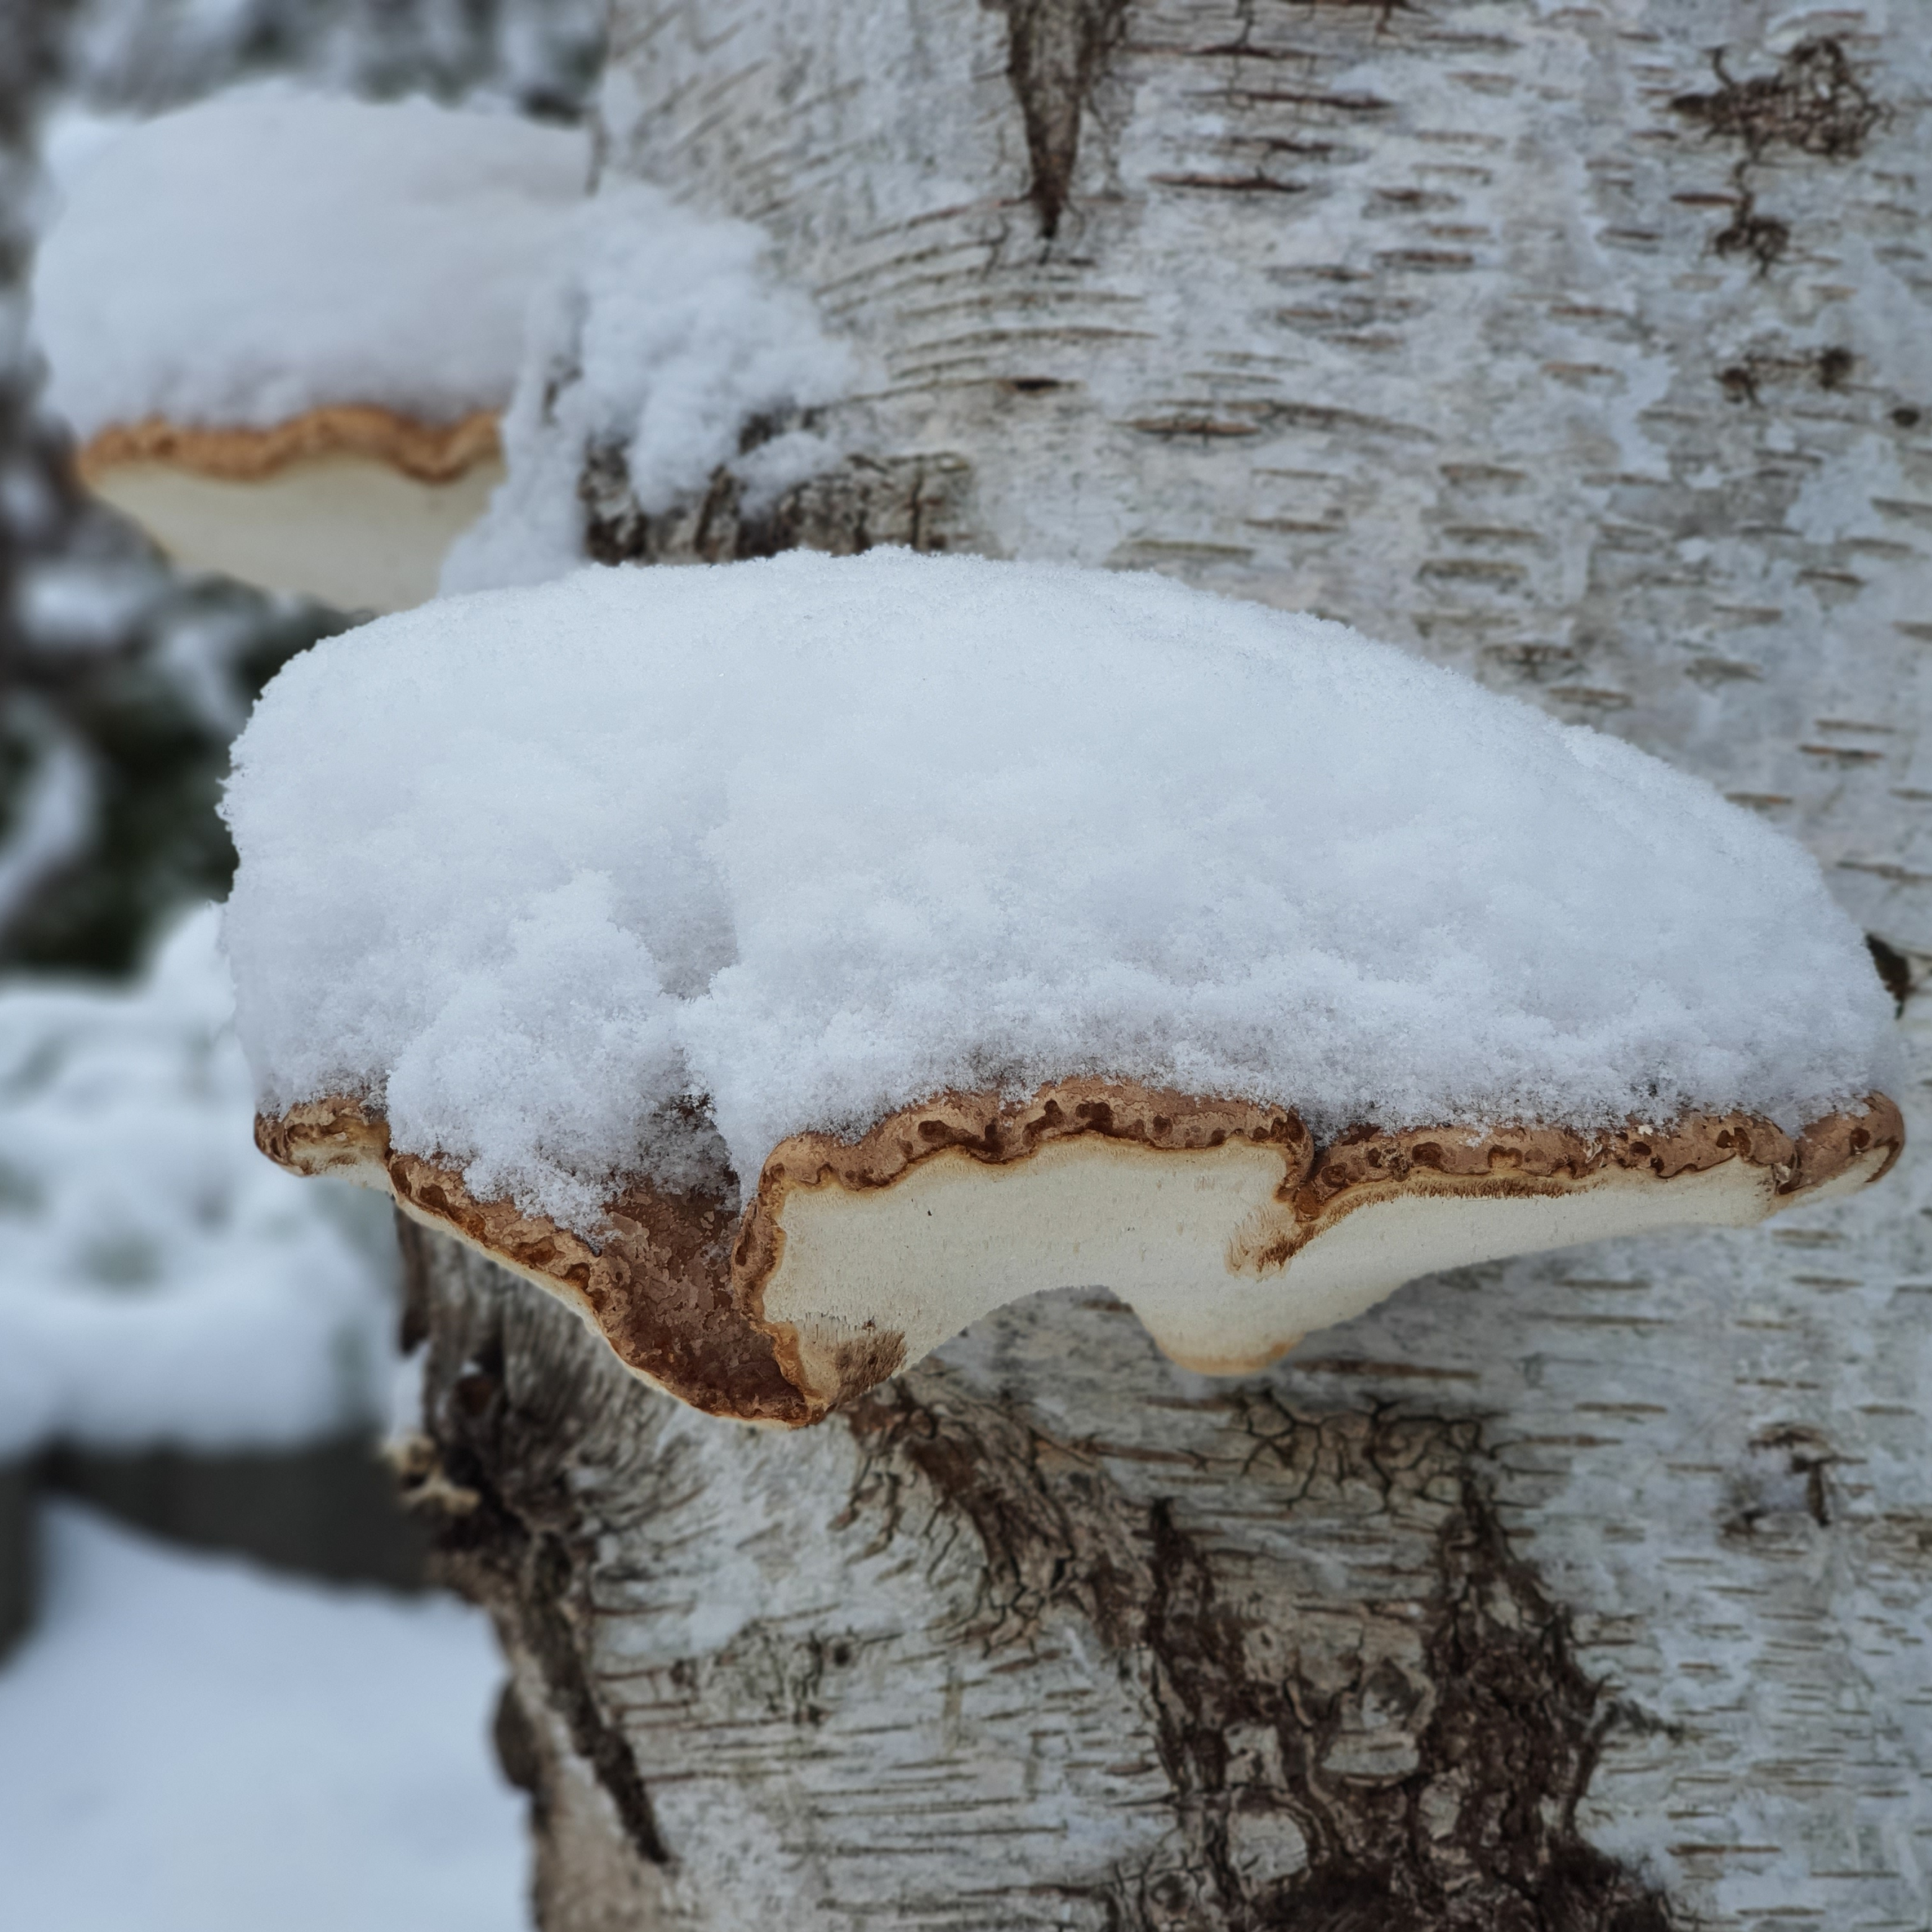 Met sneeuw bedekte paddenstoelen op de boomstronk (winterfoto's januari 2021)